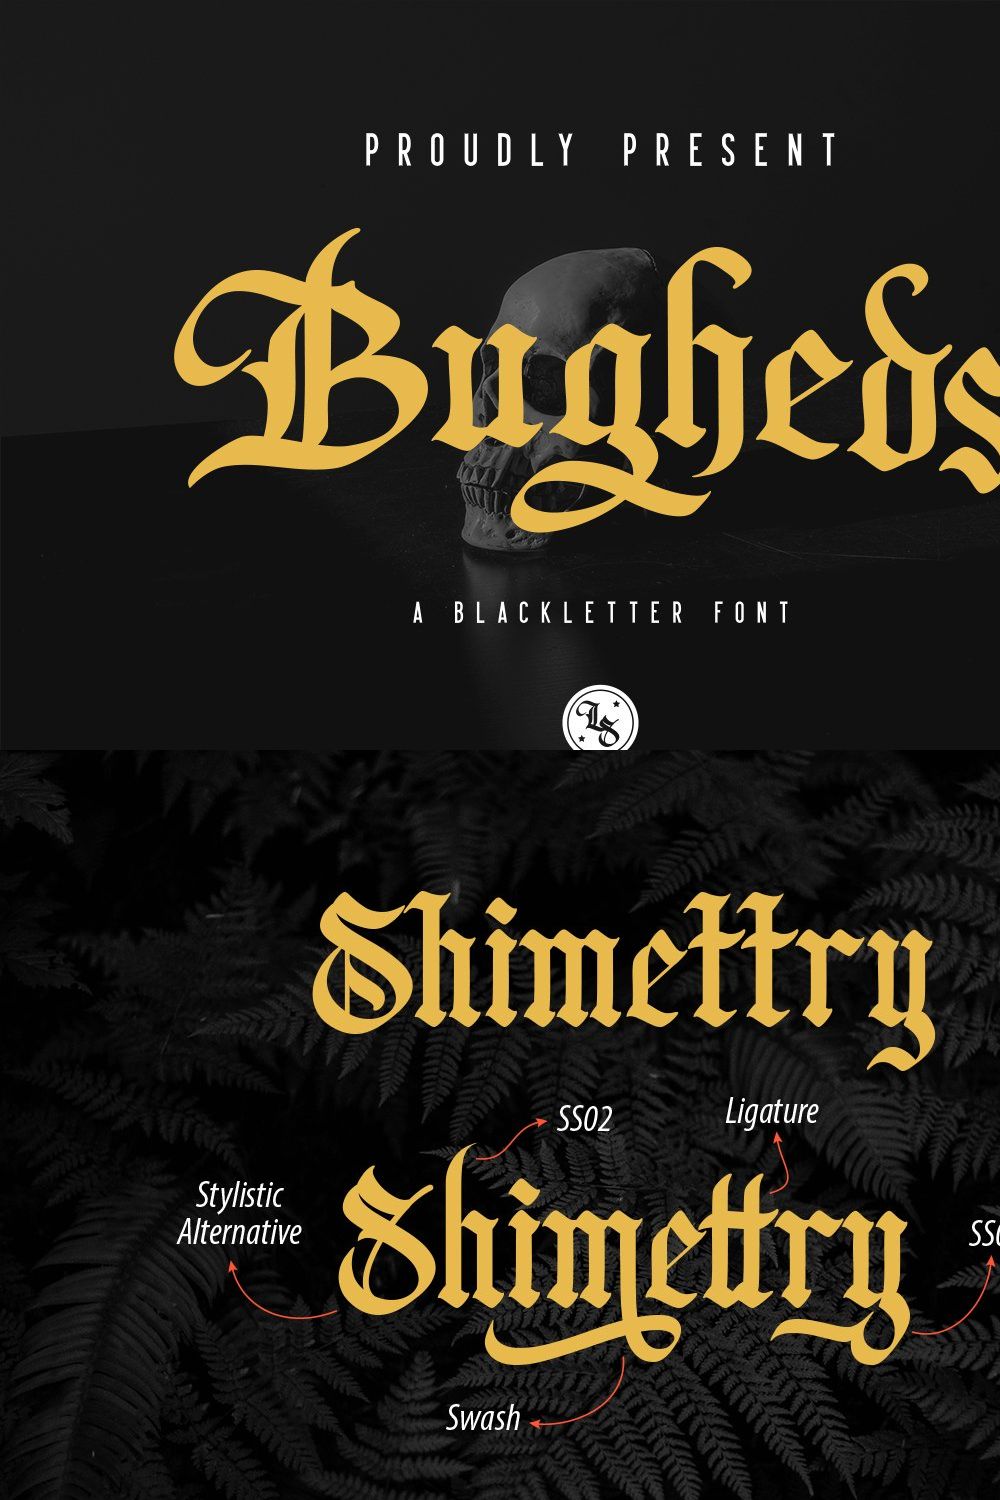 Bugheds - Blackletter Font pinterest preview image.